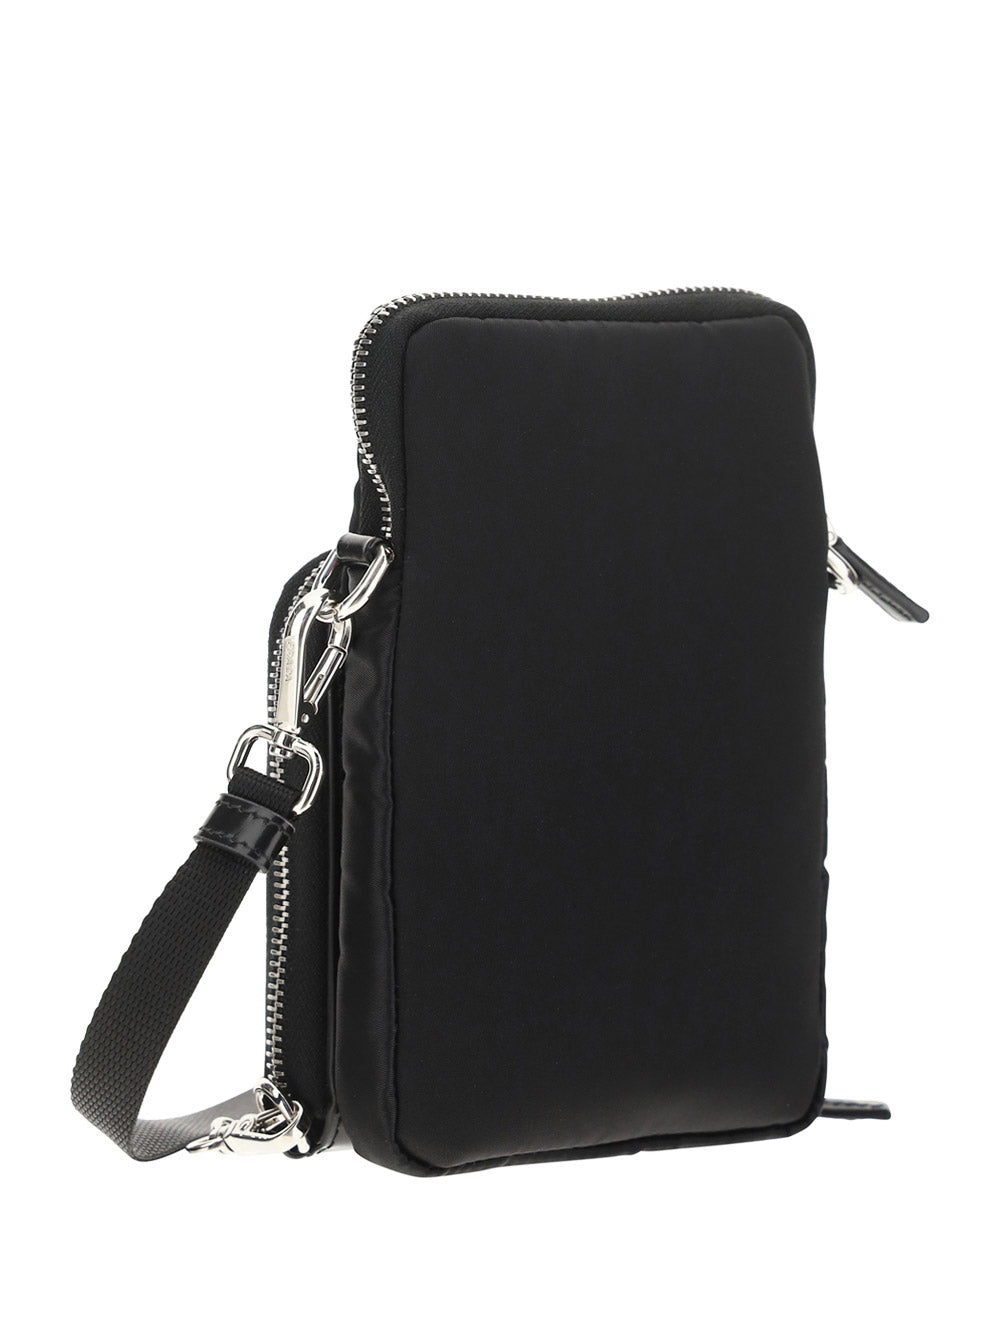 Brushed Leather & Nylon Smartphone Case - Black